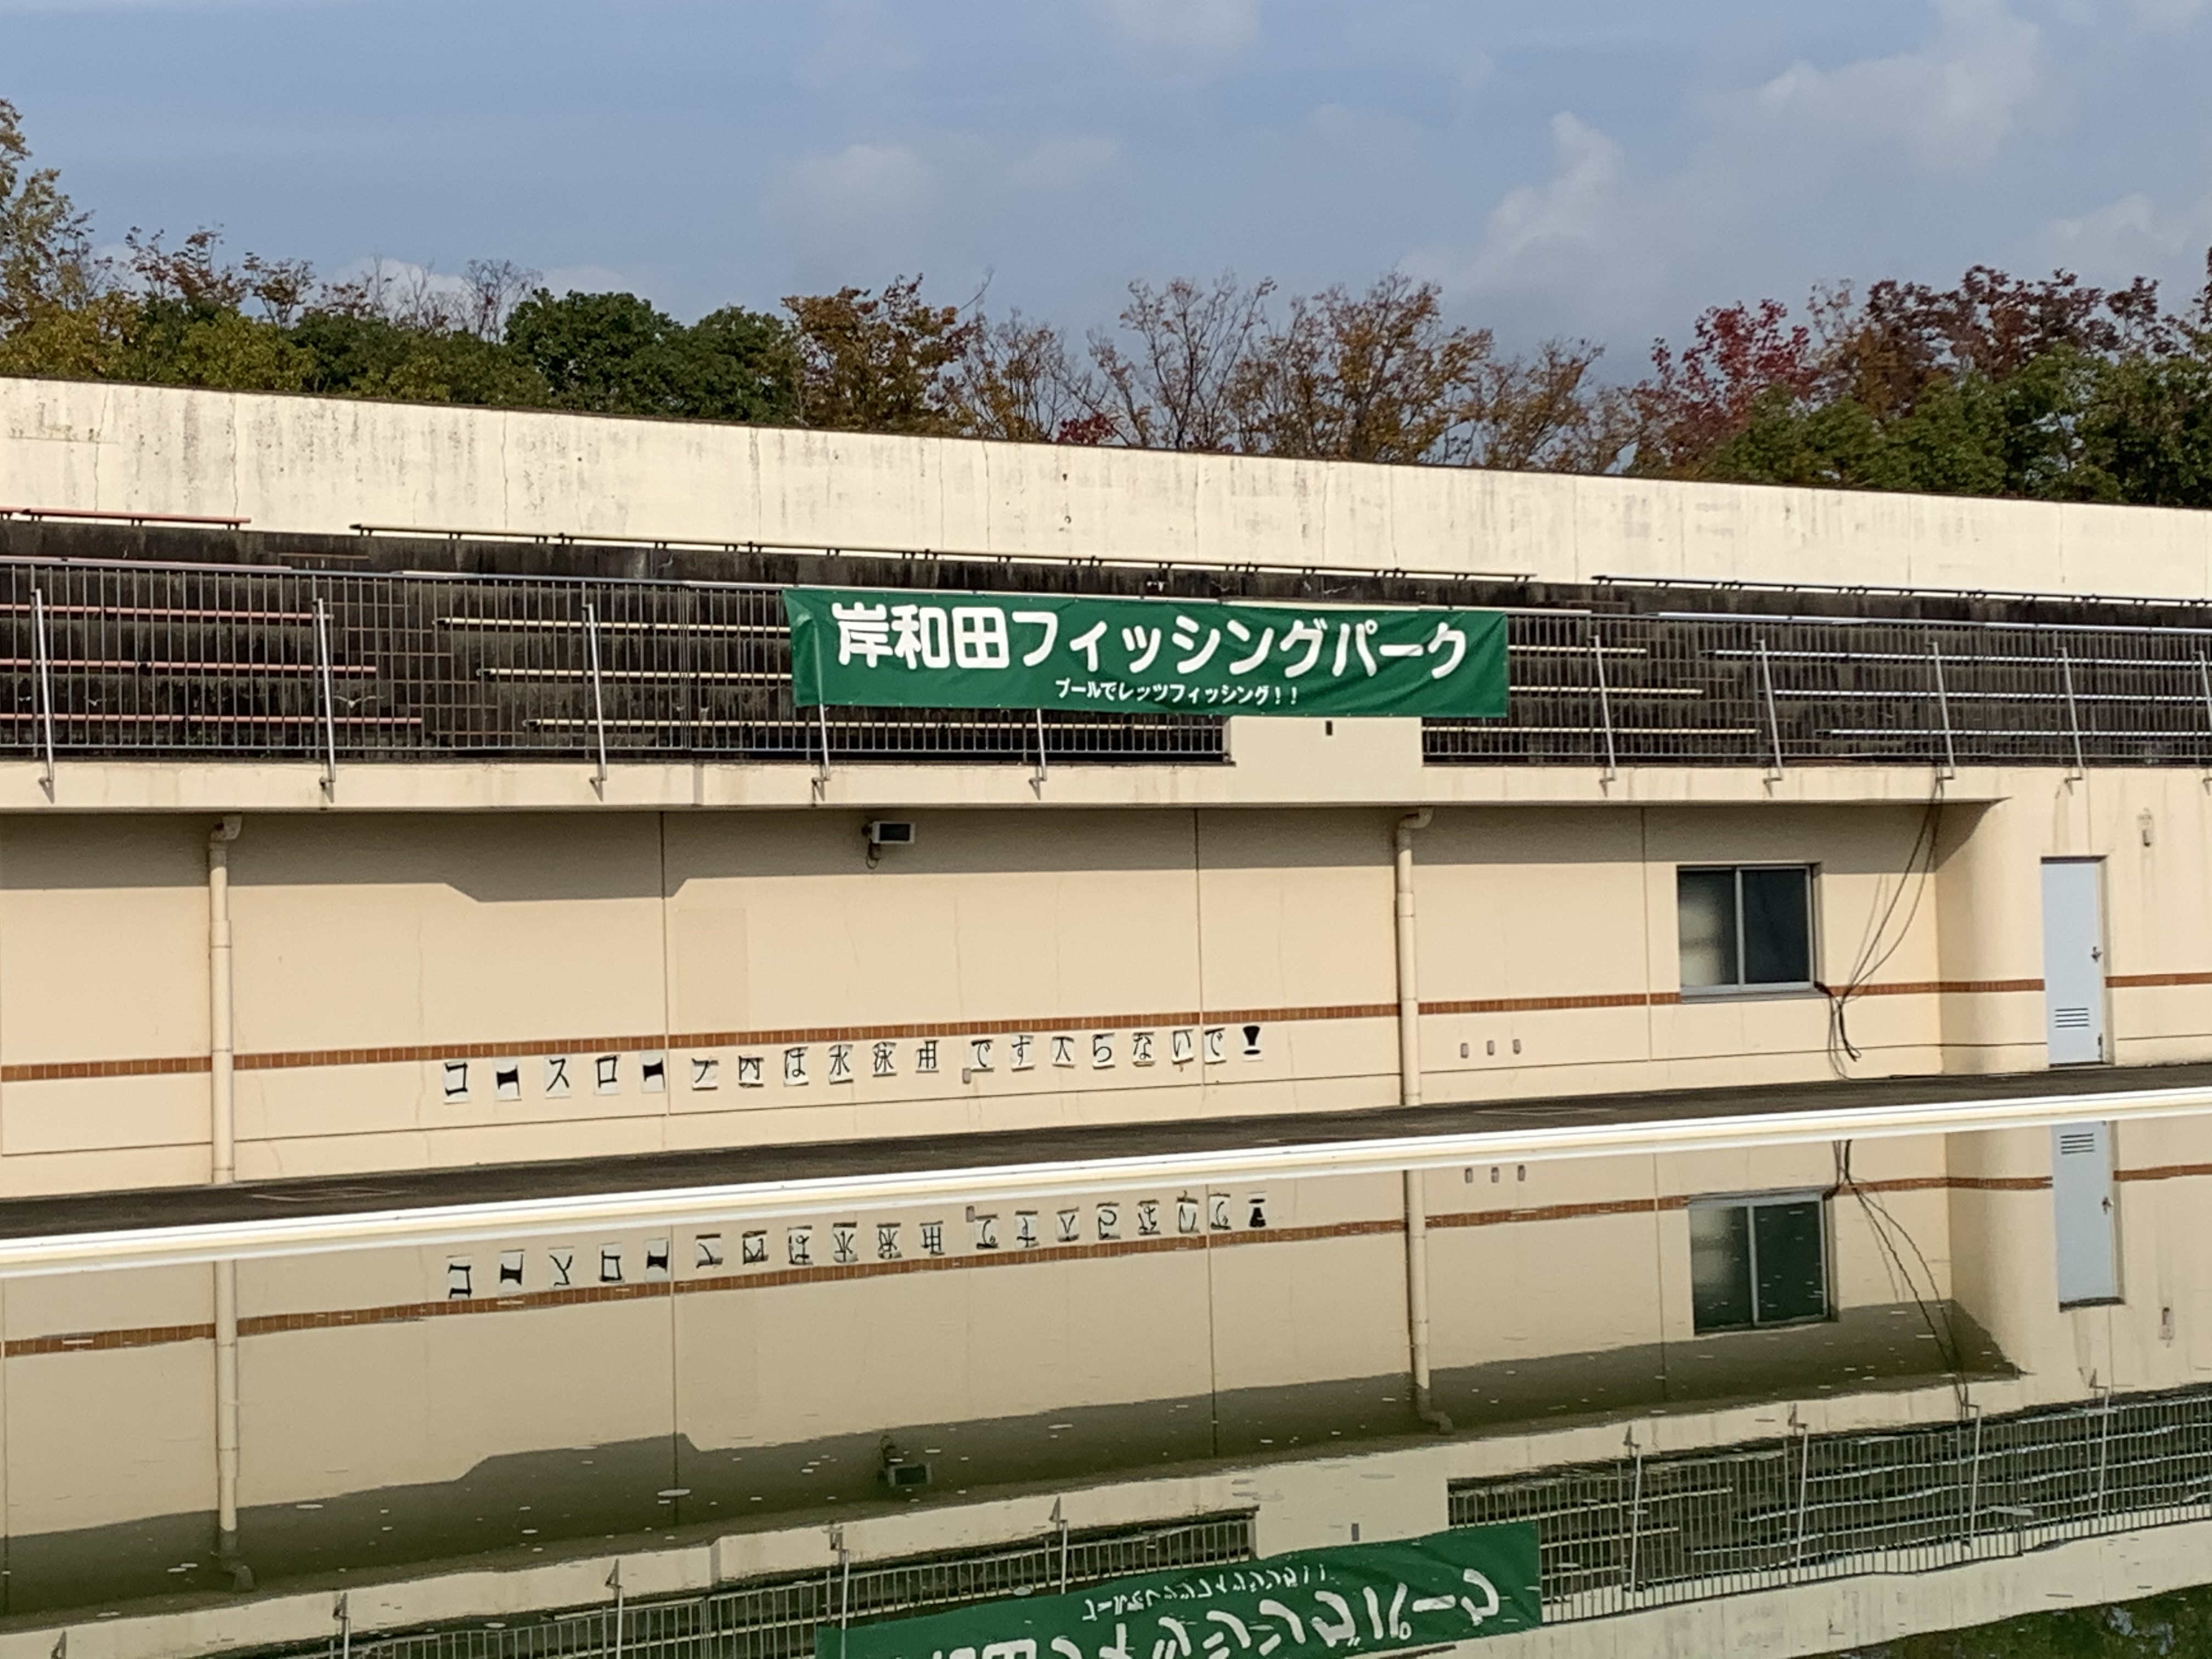 岸和田フィッシングパーク 中央公園プールが釣り堀に 一般財団法人 岸和田市公園緑化協会